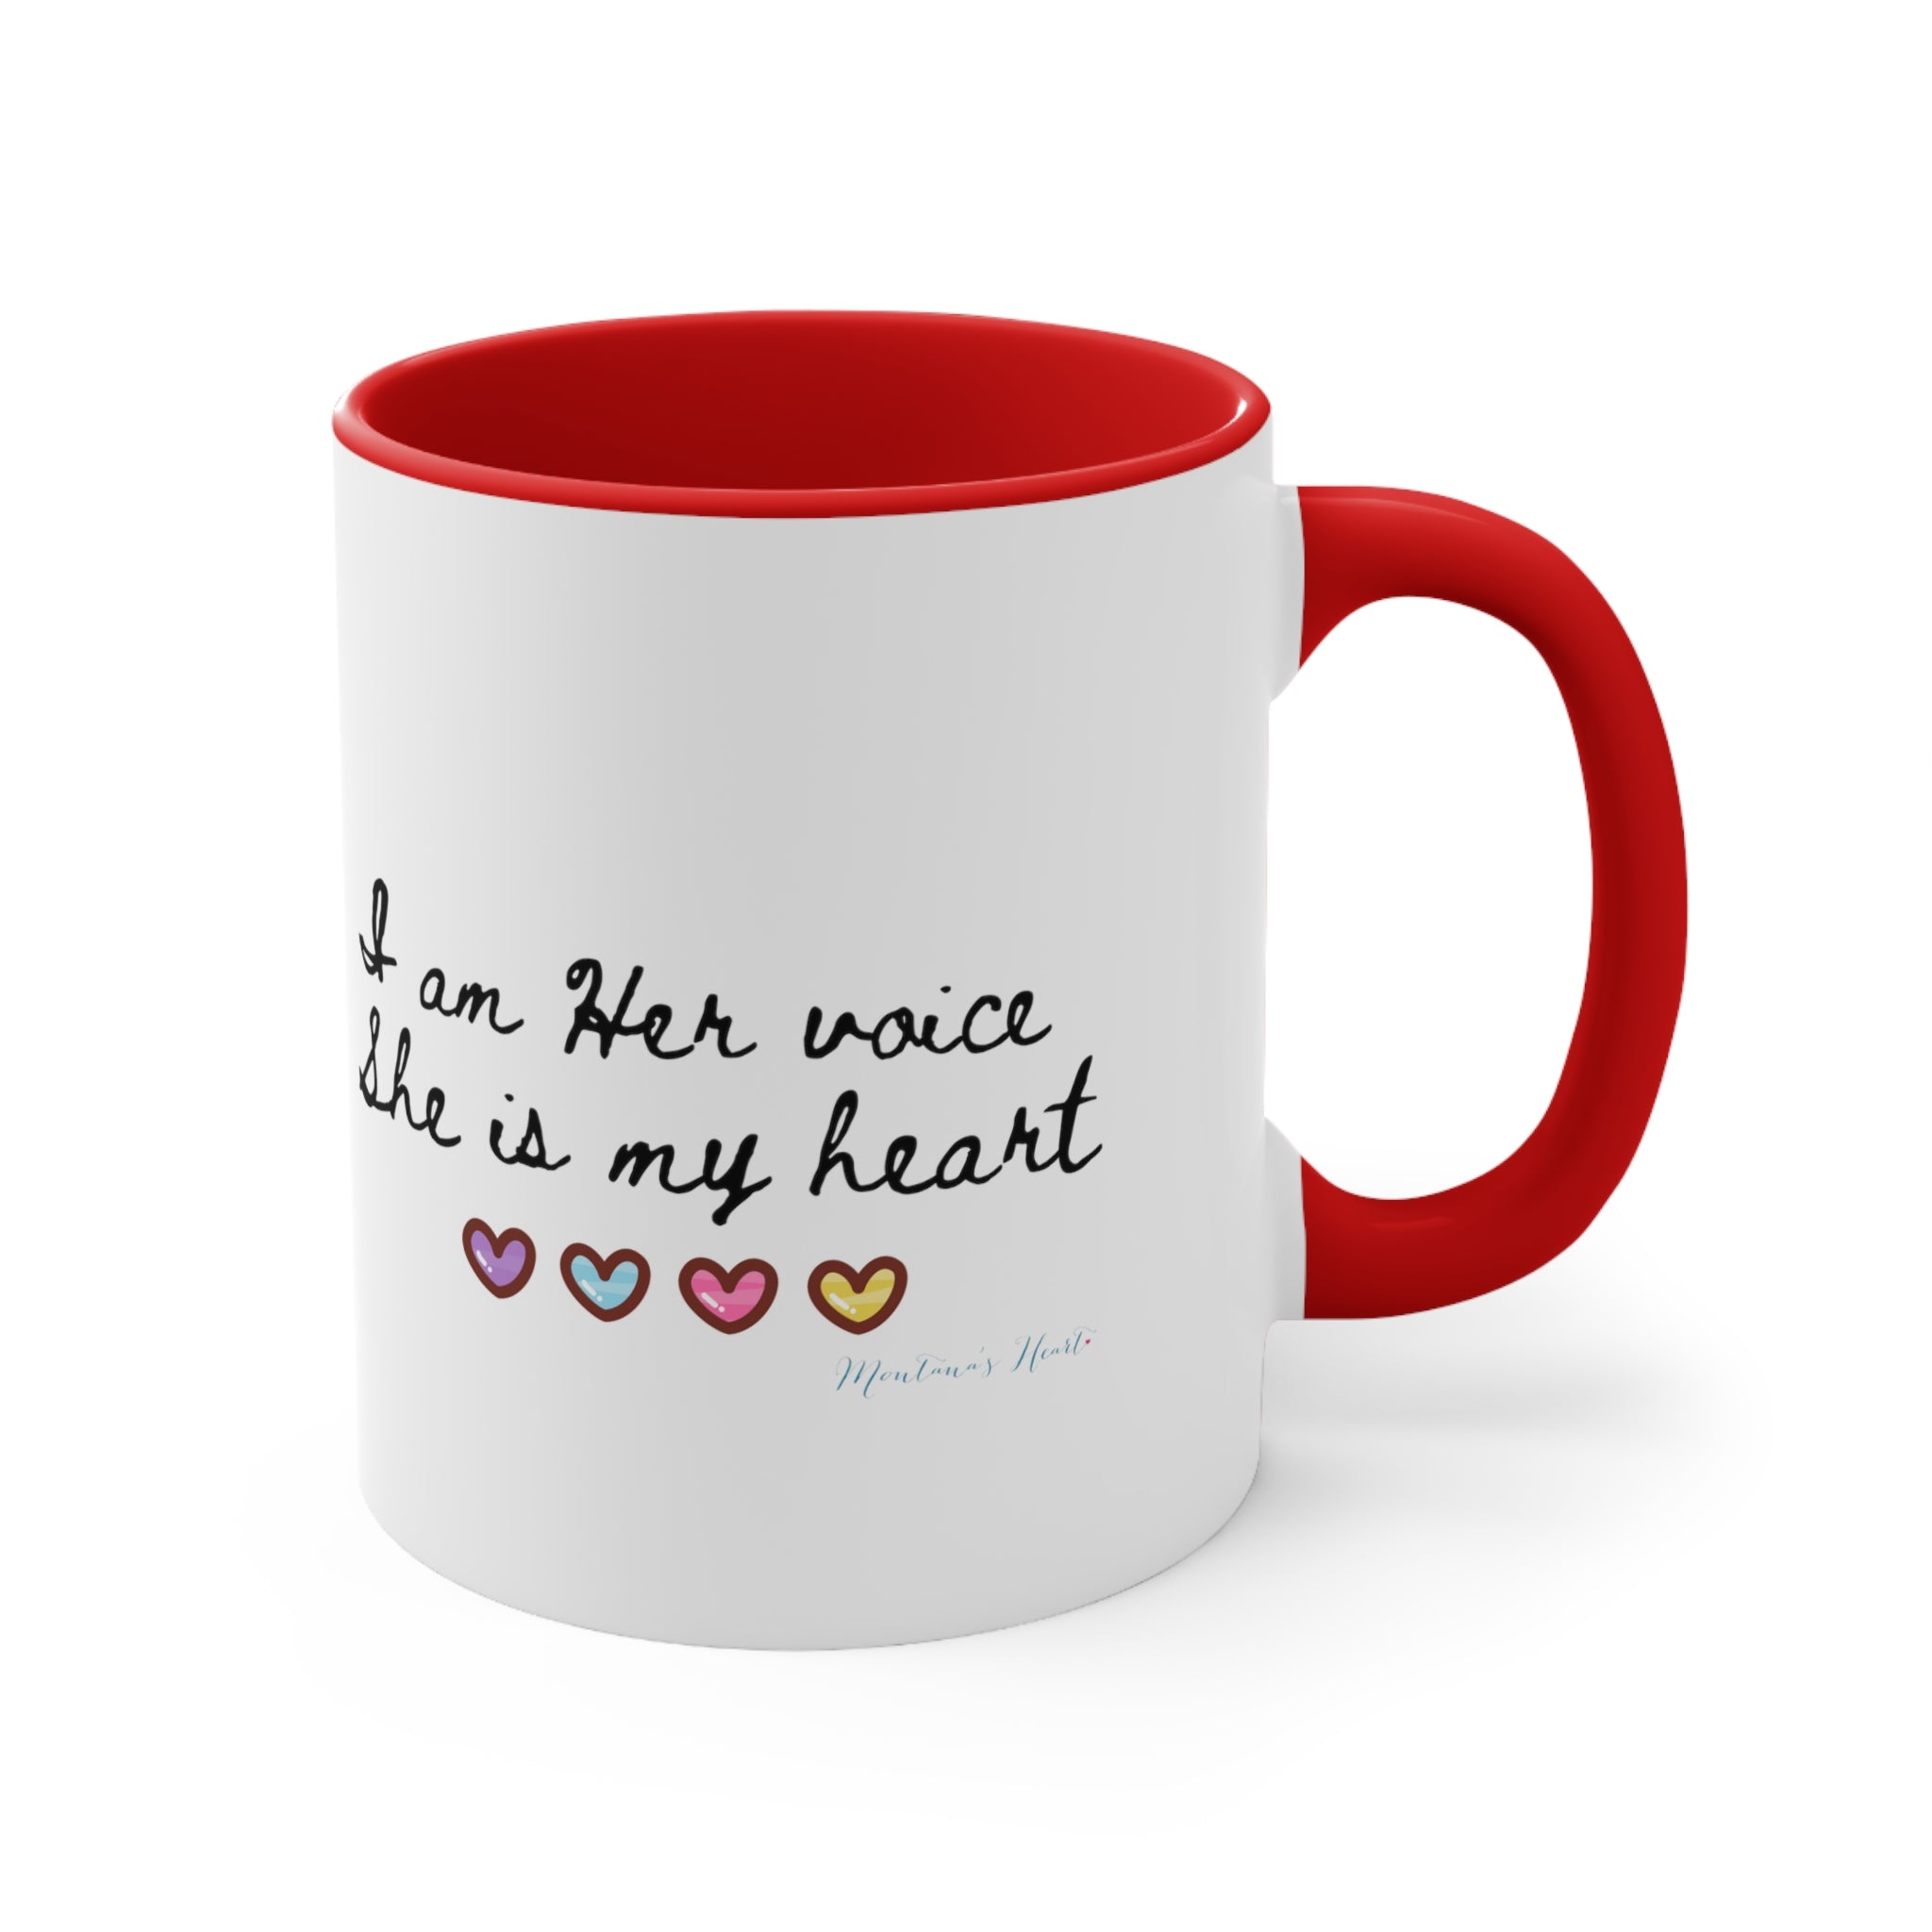 I am her voice... mom advocate, 2 tone Accent Coffee Mug, 11oz